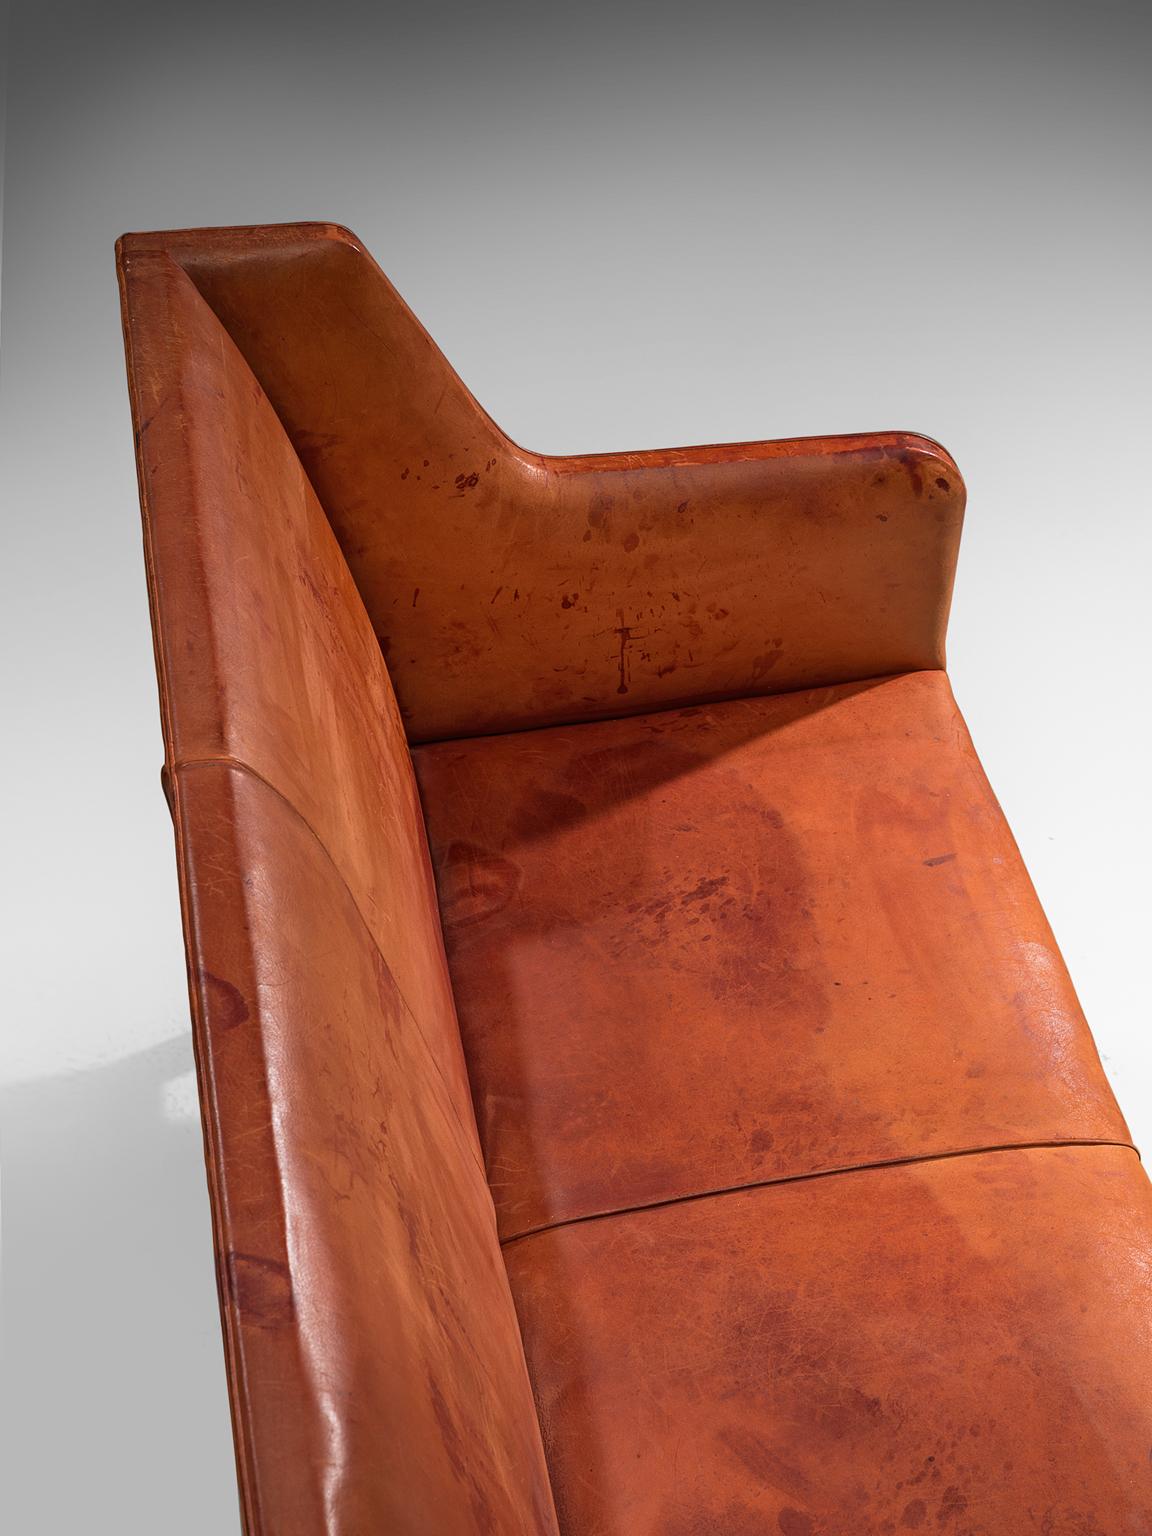 Original Cognac Leather Kaare Klint Sofa for Rud Rasmussen 2